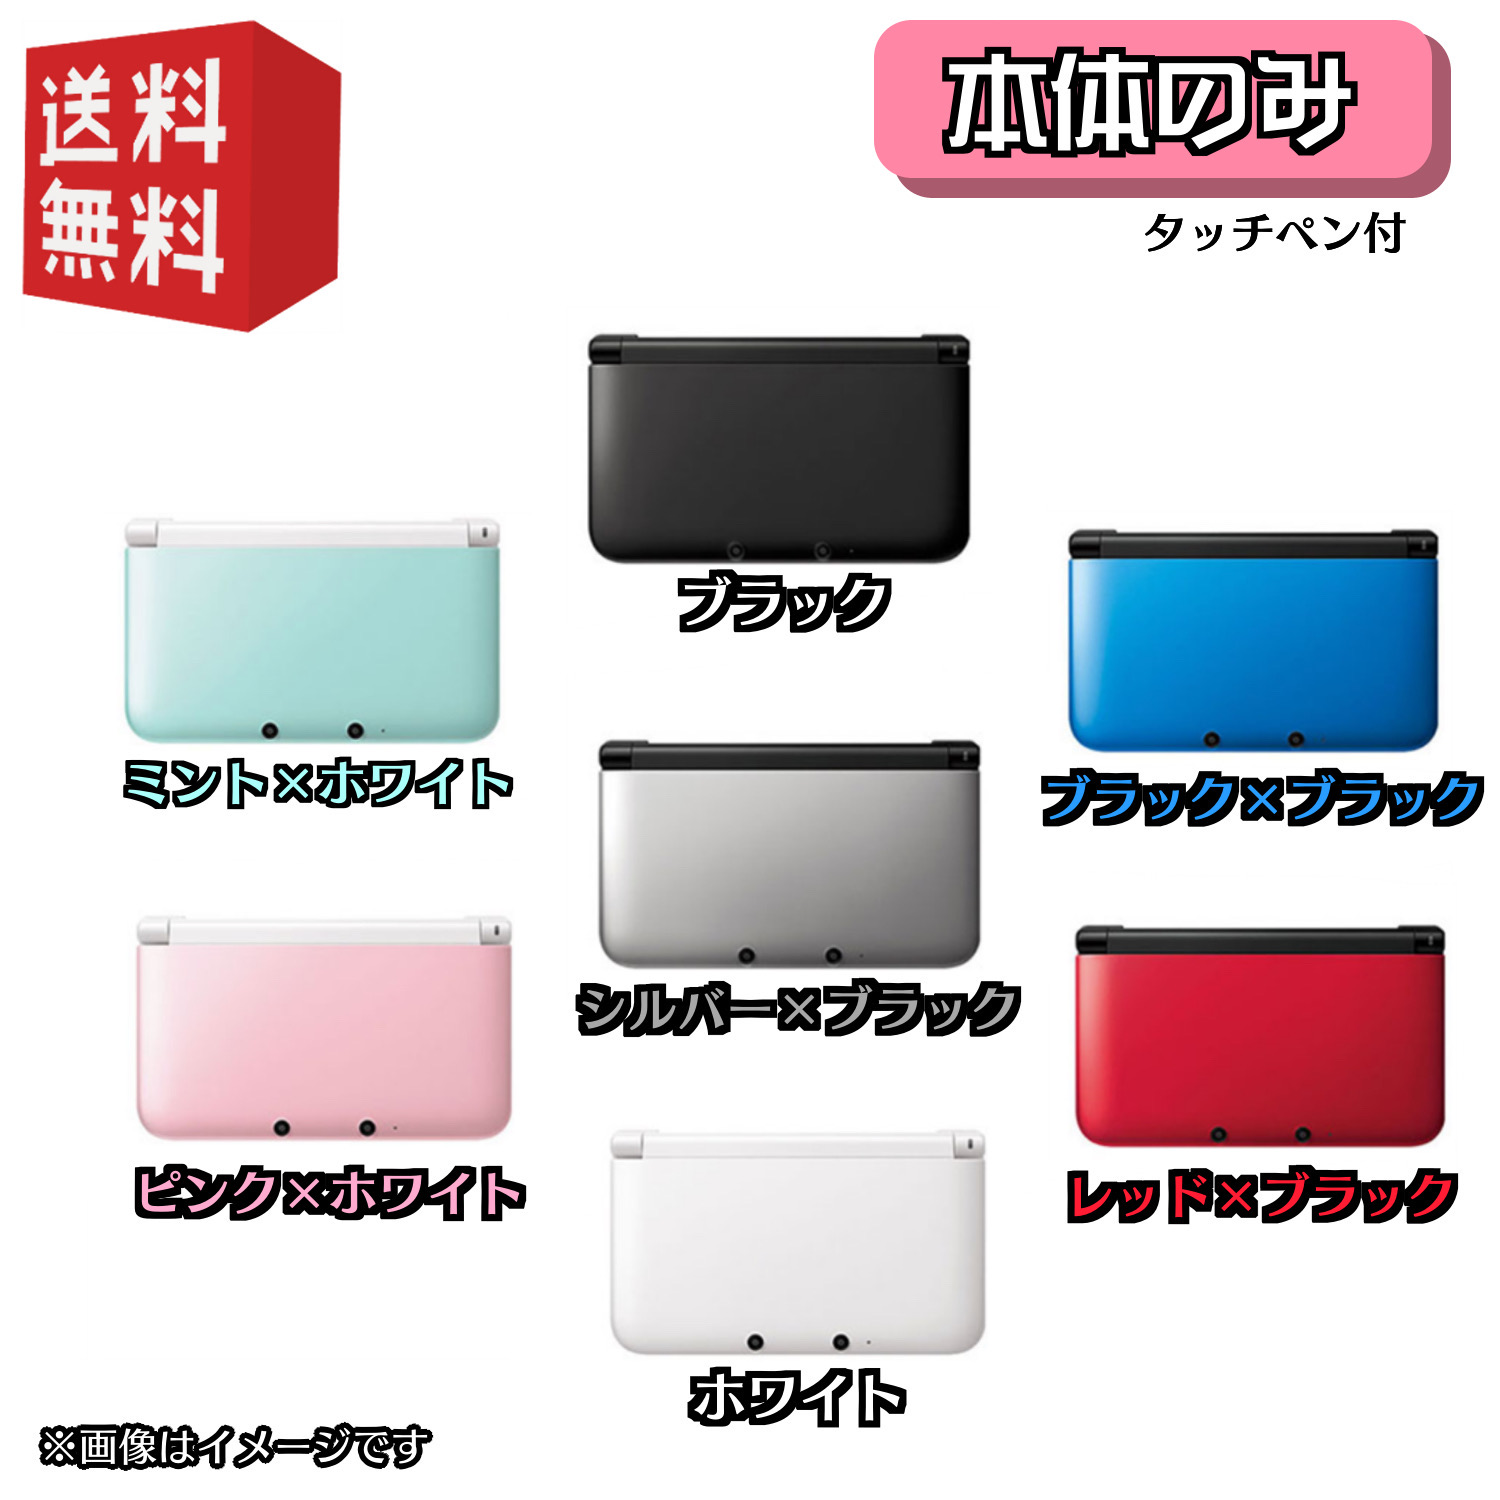 [ б/у ]Nintendo 3DS LL корпус [ корпус только ] можно выбрать цвет 7 цвет * акция объект товар *